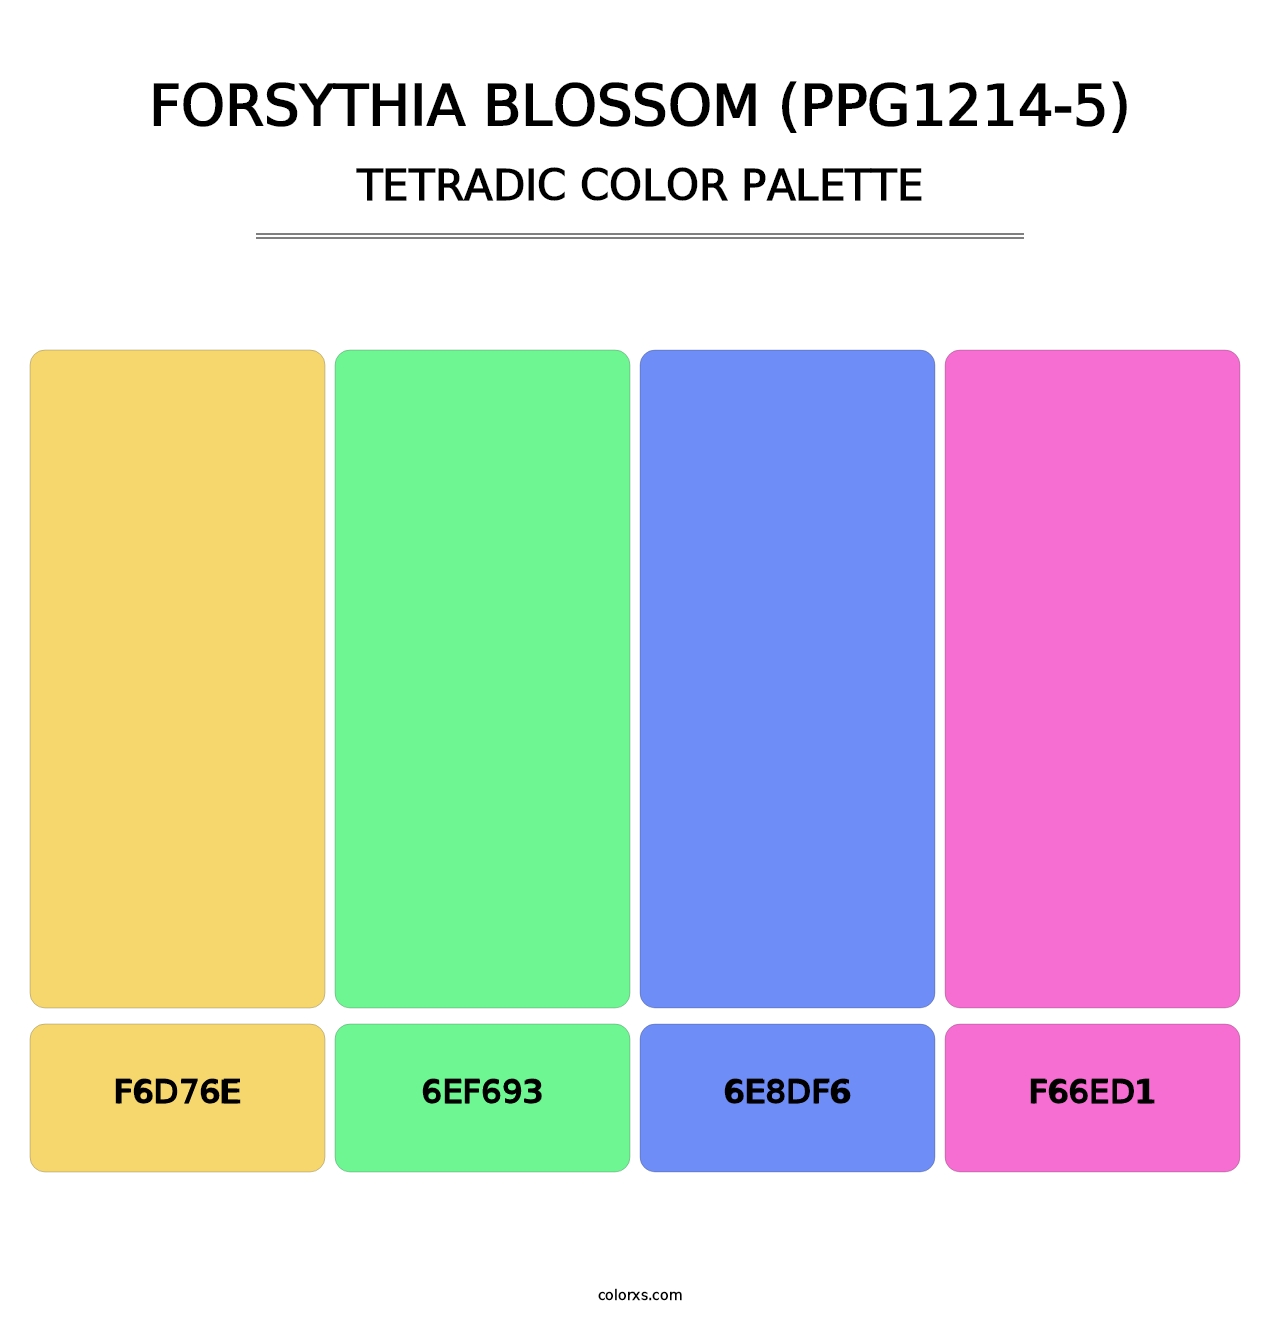 Forsythia Blossom (PPG1214-5) - Tetradic Color Palette